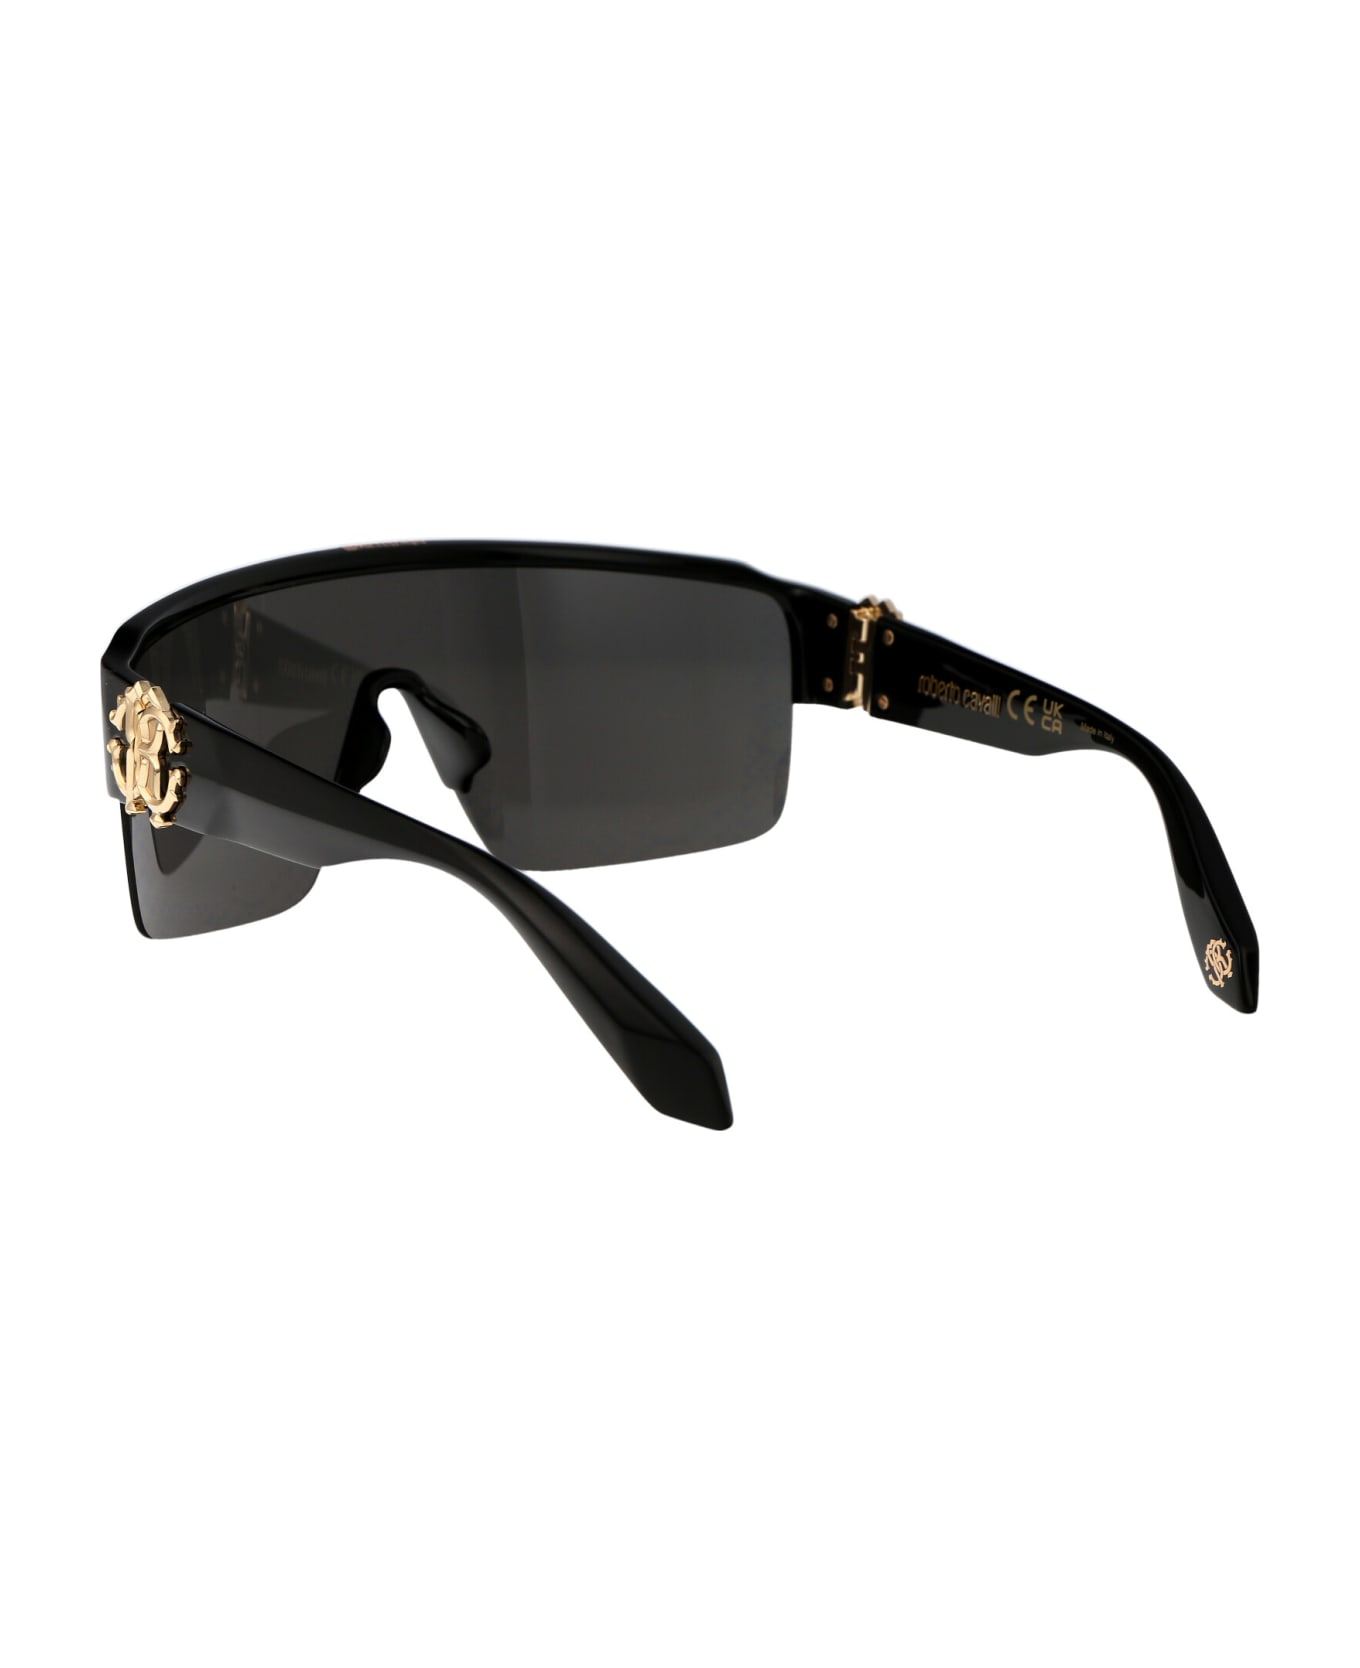 Roberto Cavalli Src037m Sunglasses - Z42L BLACK TOTALE